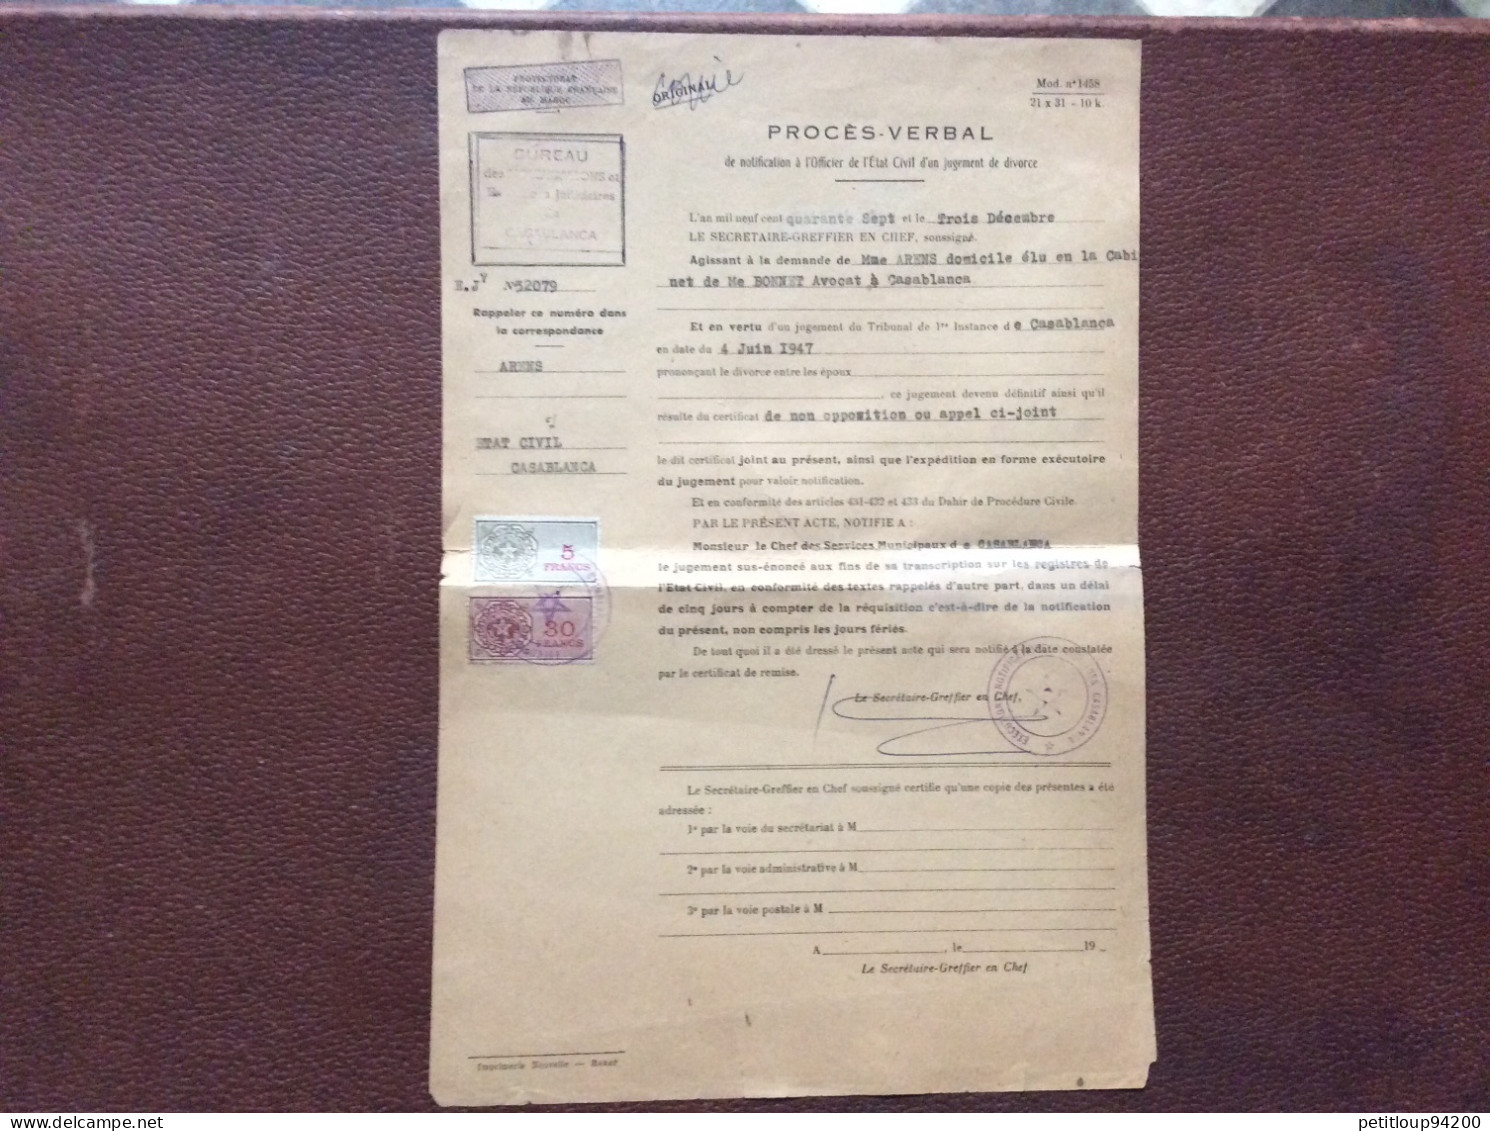 2 TIMBRES FISCAUX SUR DOCUMENT  Procès Verbal  *5 Francs & 30 Francs  CASABLANCA  Maroc  ANNÉE 1947 - Postage Due